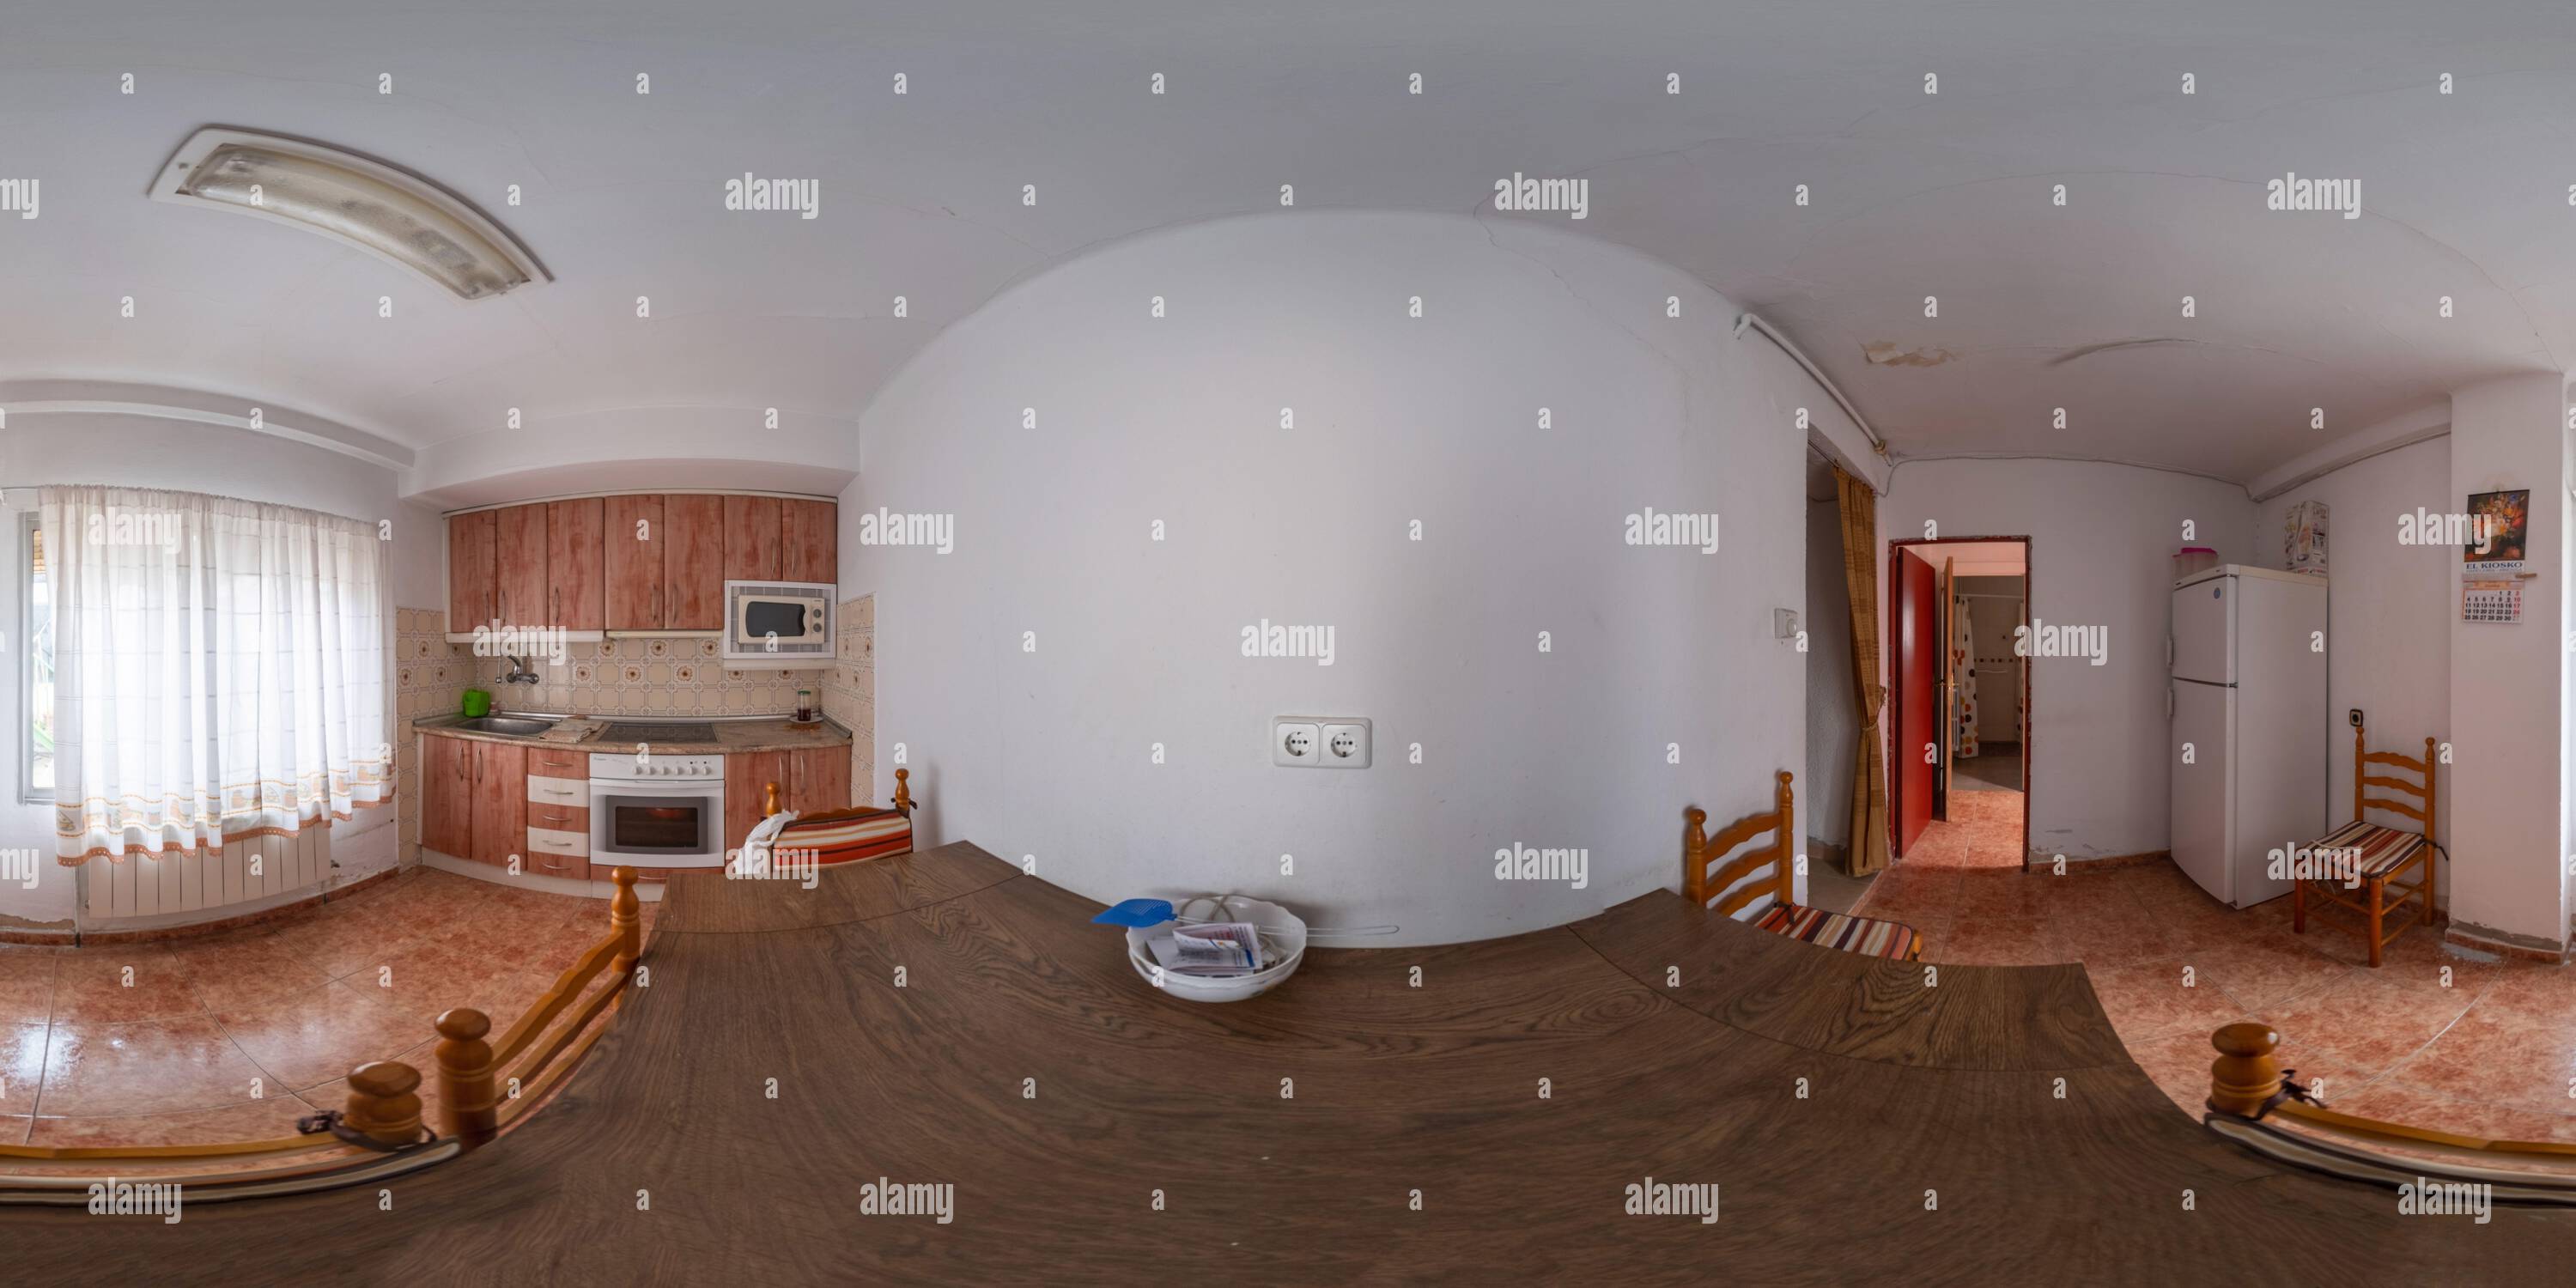 360 Grad Panorama Ansicht von 360 Grad Panoramafotografie Küche eines alten Hauses